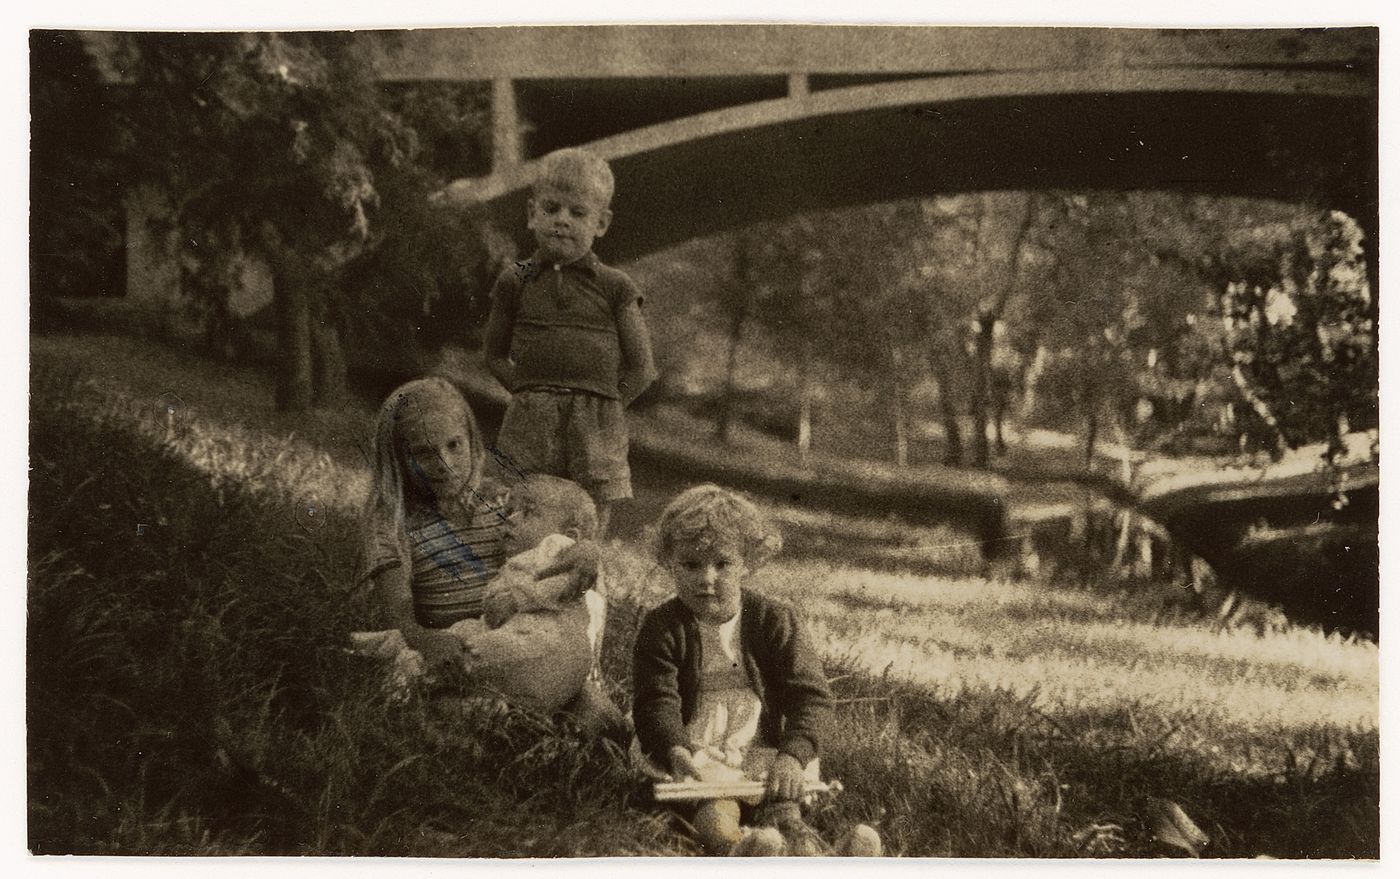 Photograph of the Williams' family children at Casa sobre el arroyo, Mar del Plata, Argentina